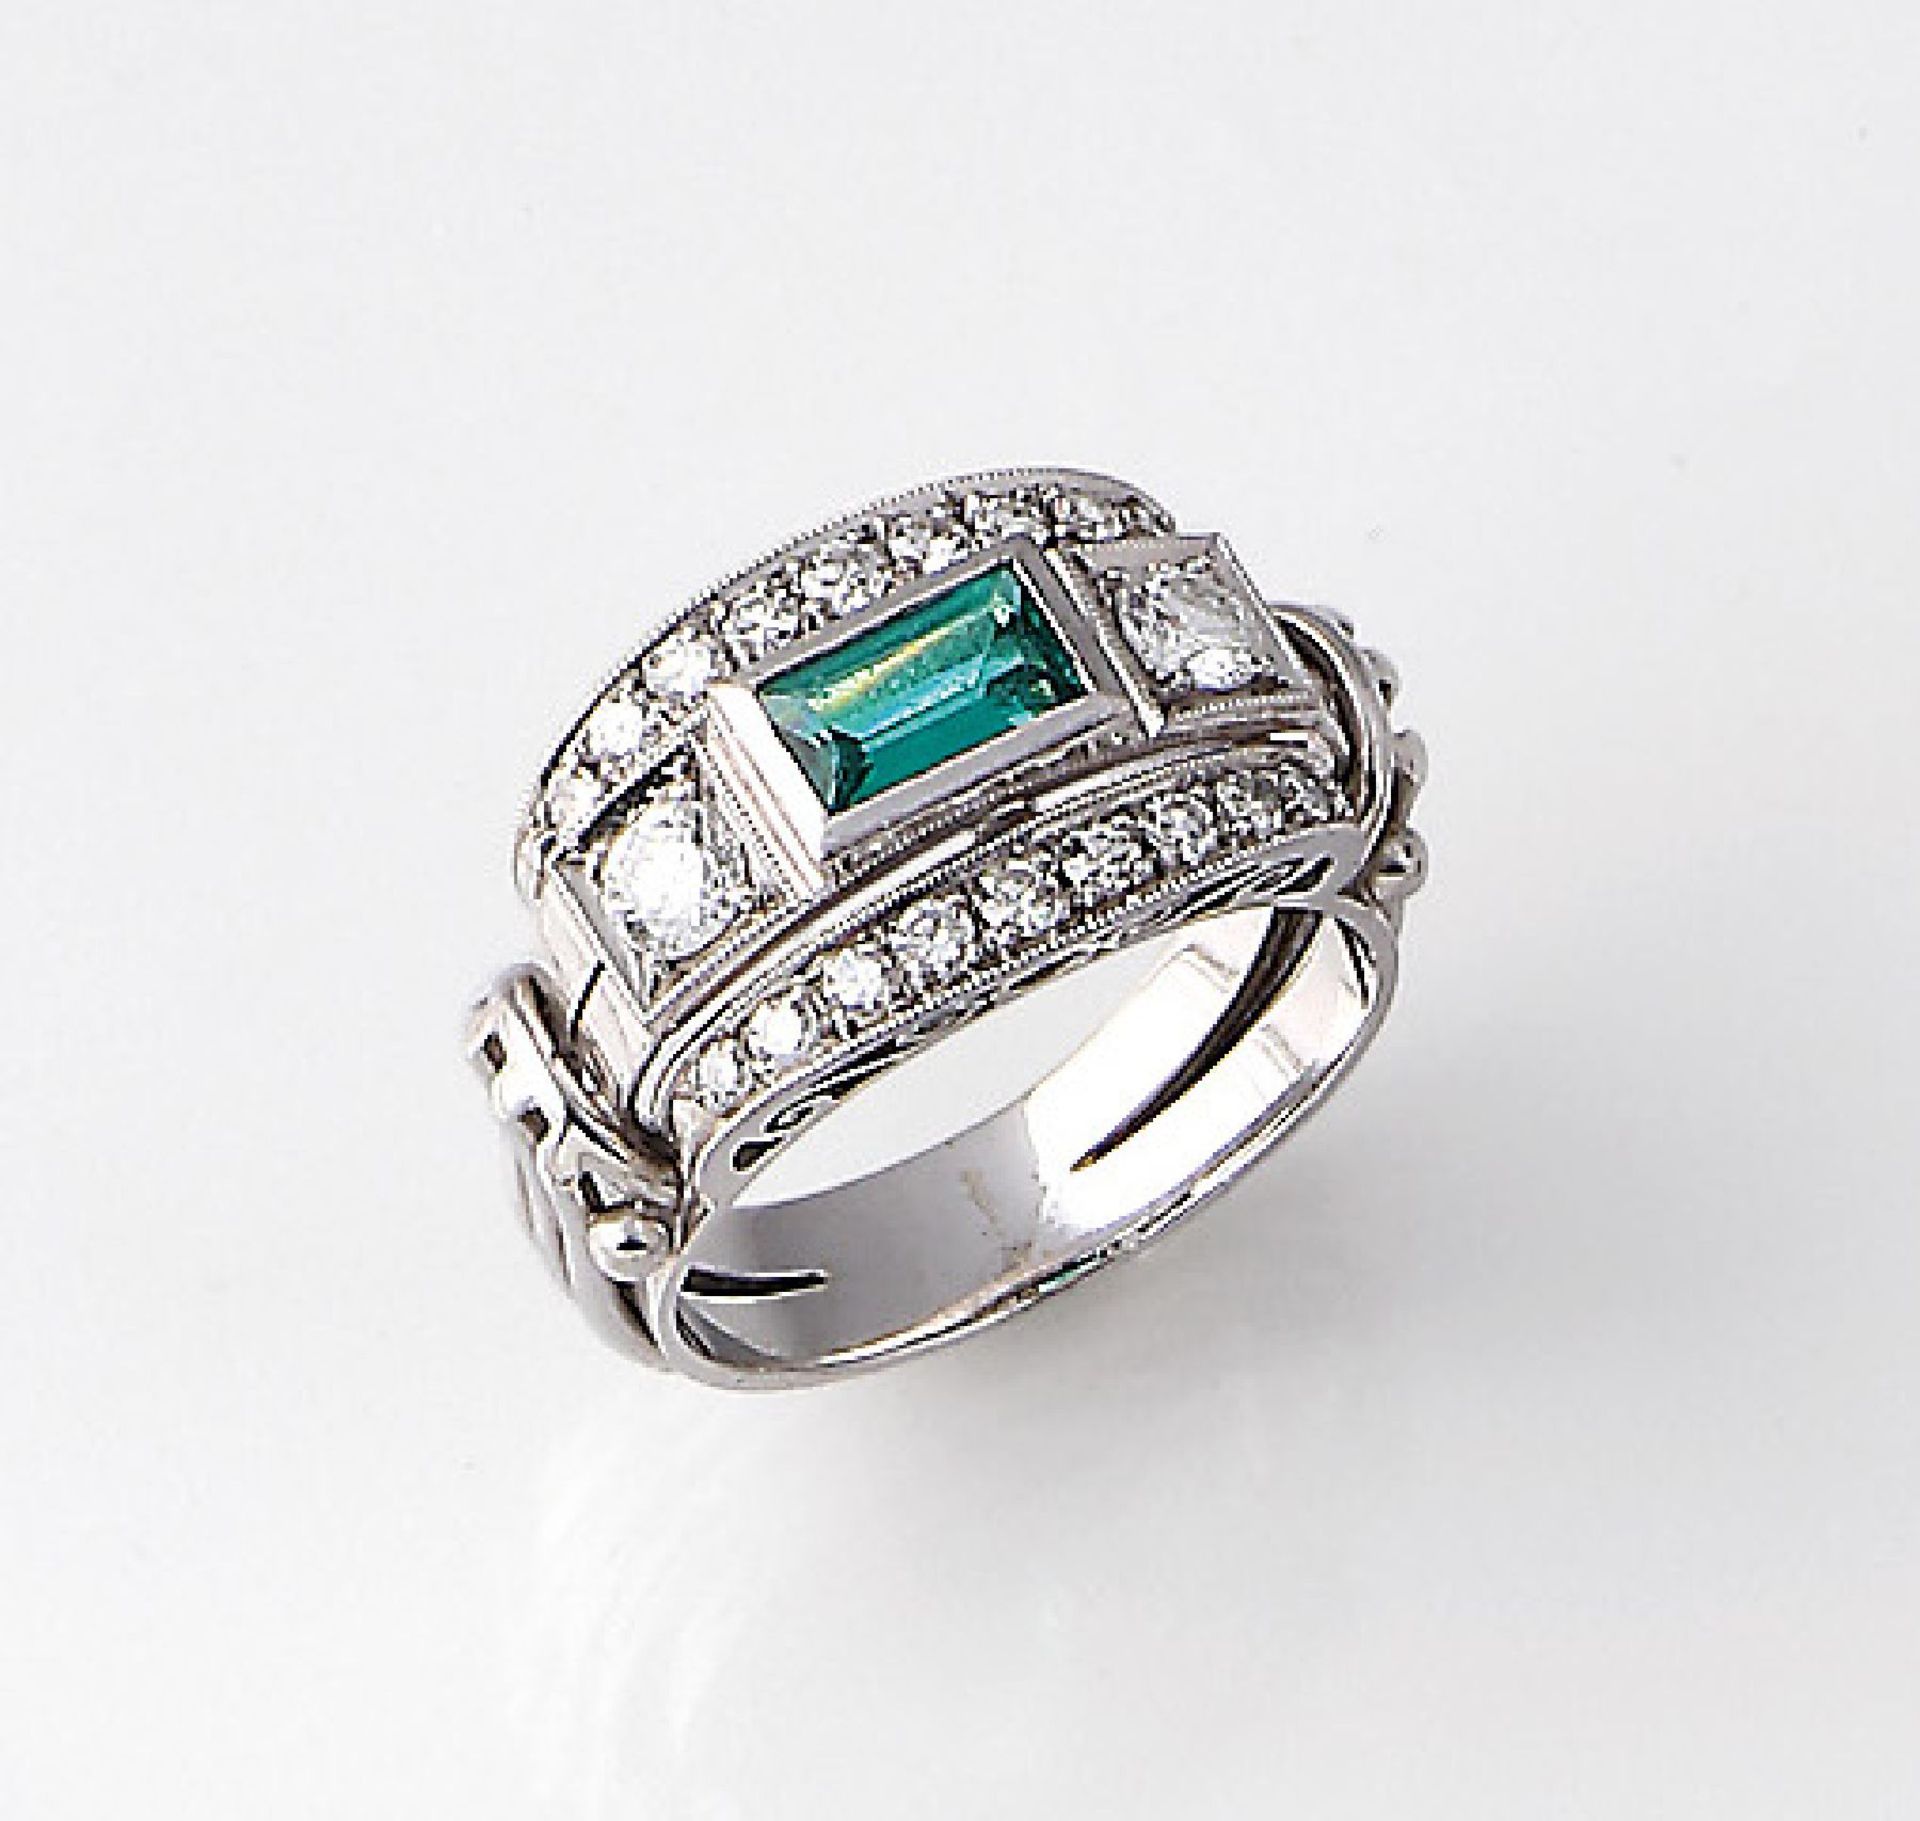 18 kt Gold Ring mit Smaragd und Diamanten, deutsch um 1935/40, WG 750/000, Smaragdrechteck ca. 1.